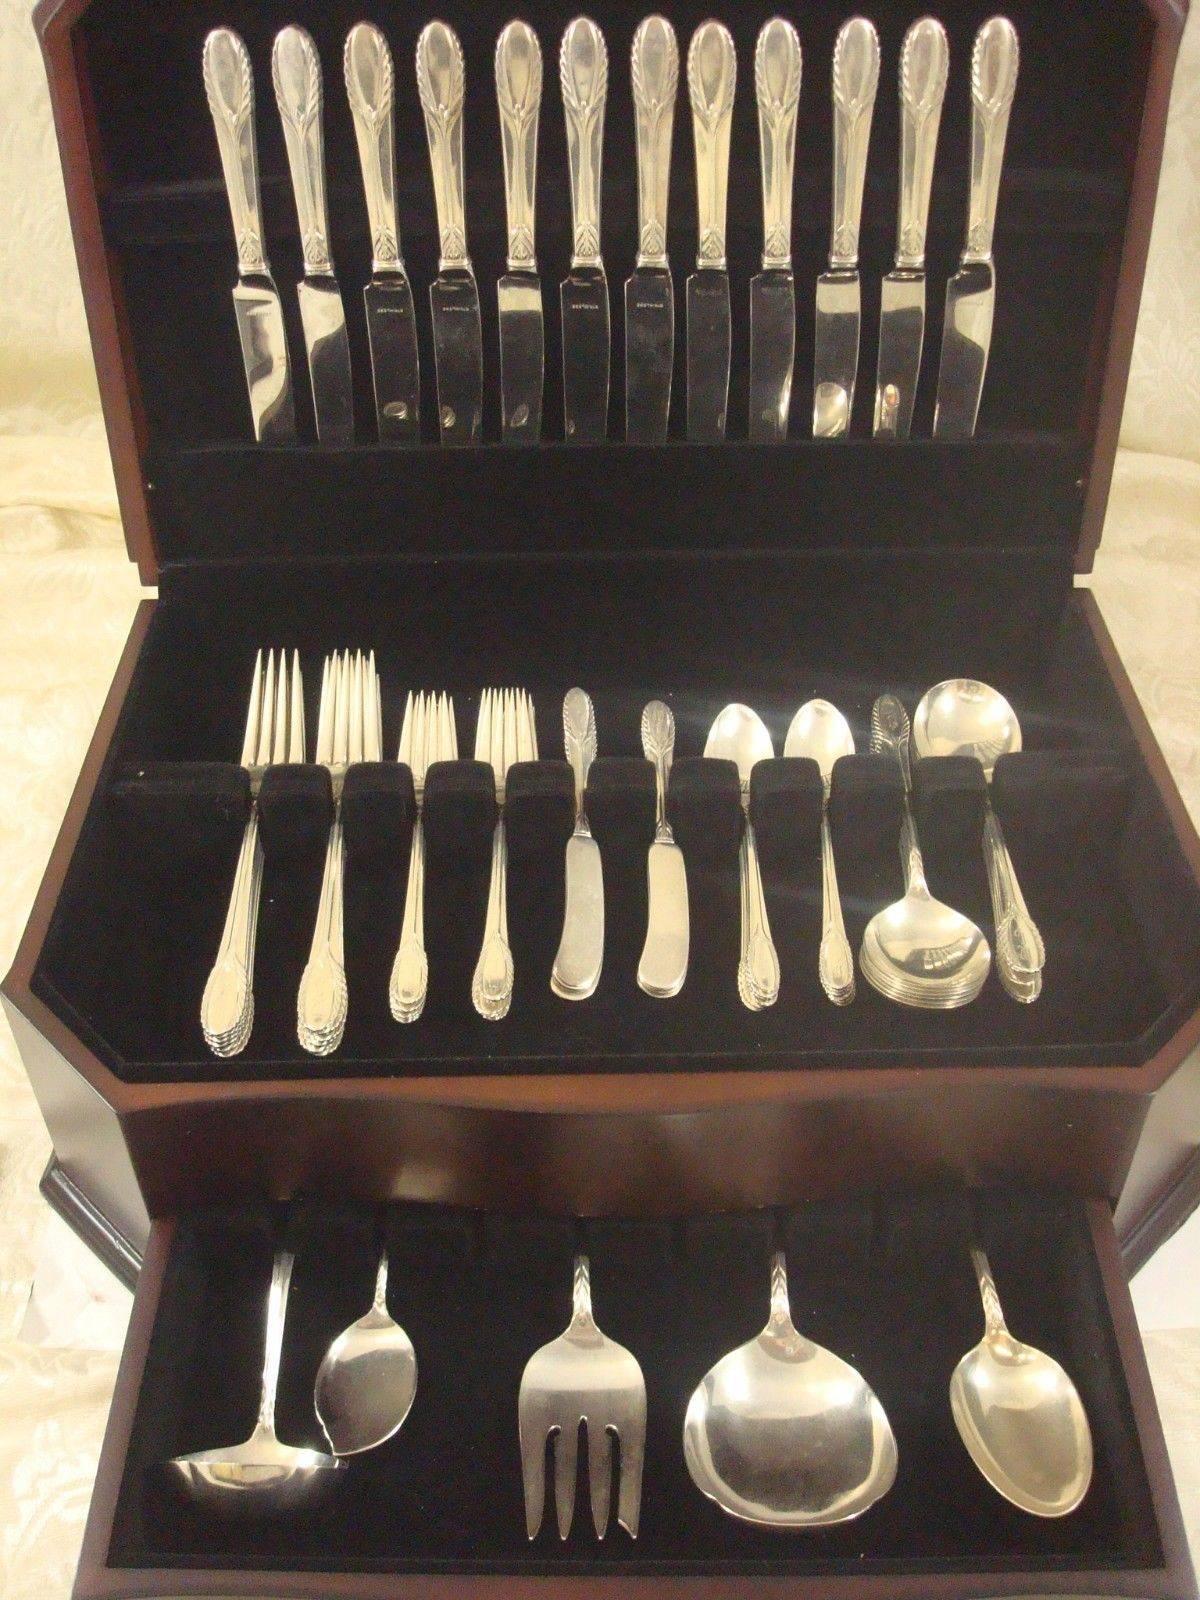 Trousseau by International Sterling Silber Besteck Set Abendessen Größe von 77 Stück. Dieses Set enthält:

12 Tafelmesser, 9 1/2